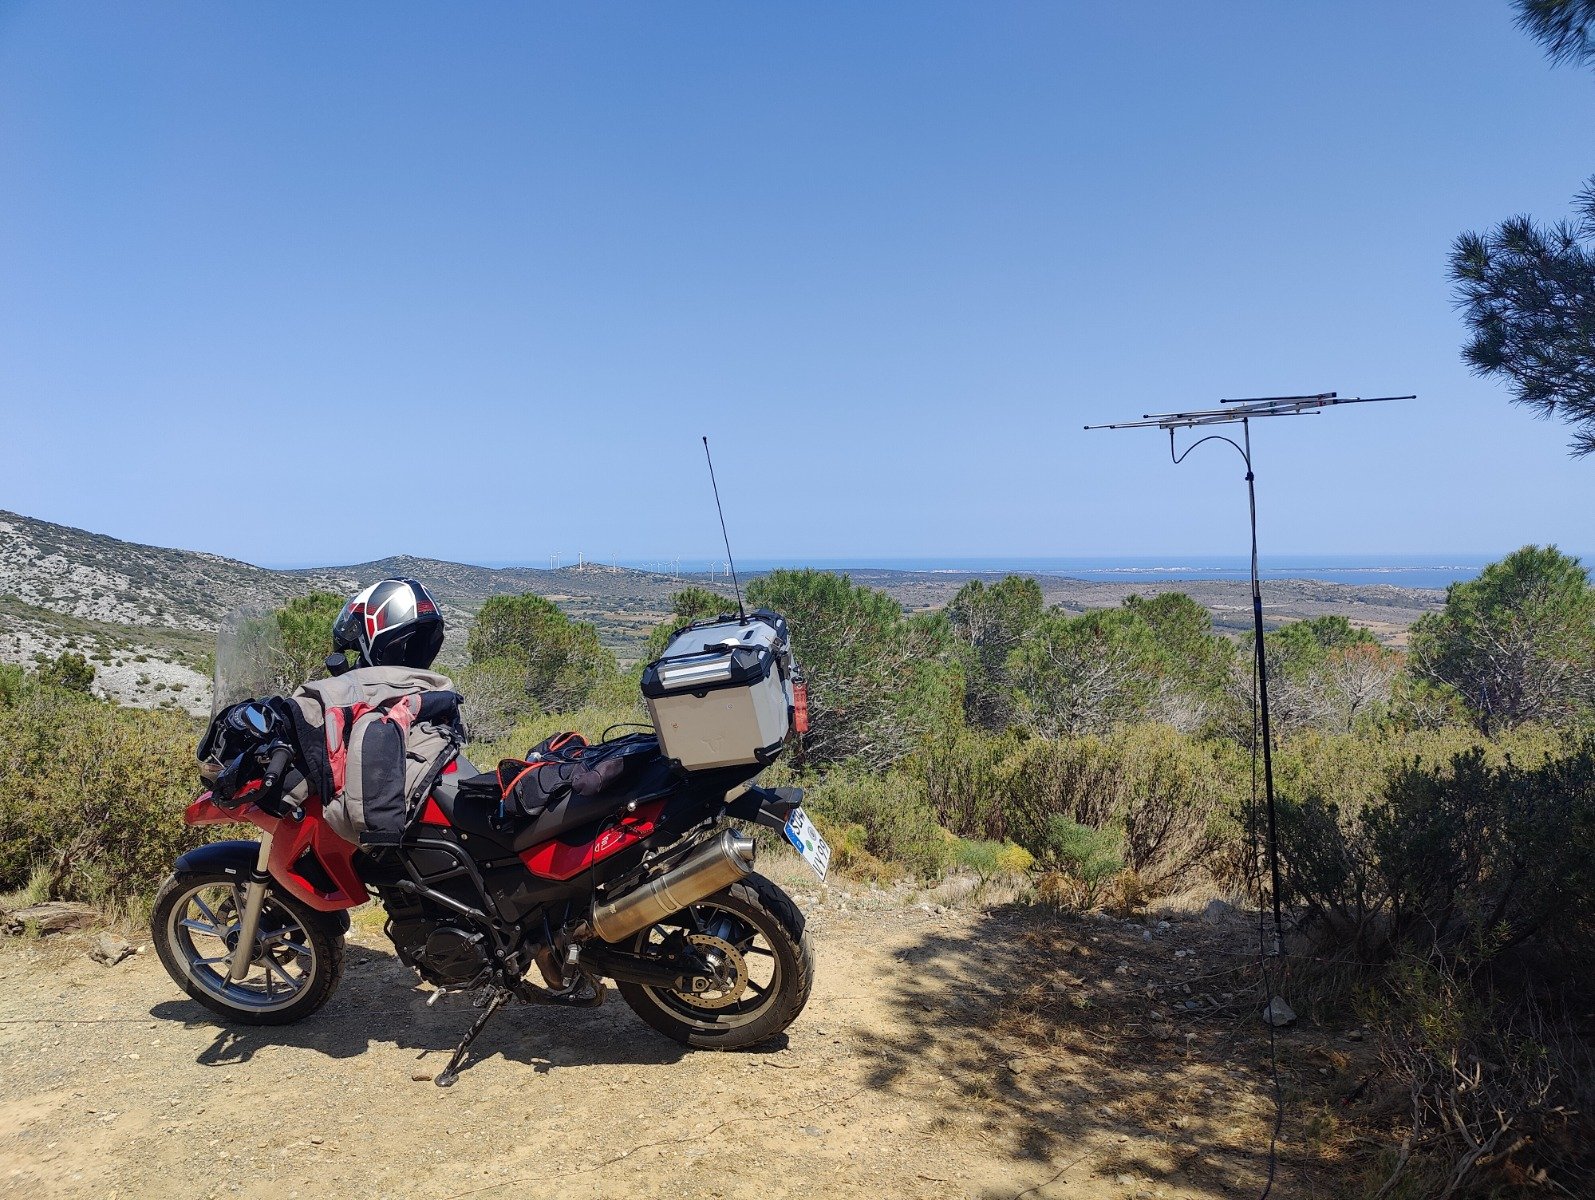 Motorrad und Antennen vor Berglandschaft